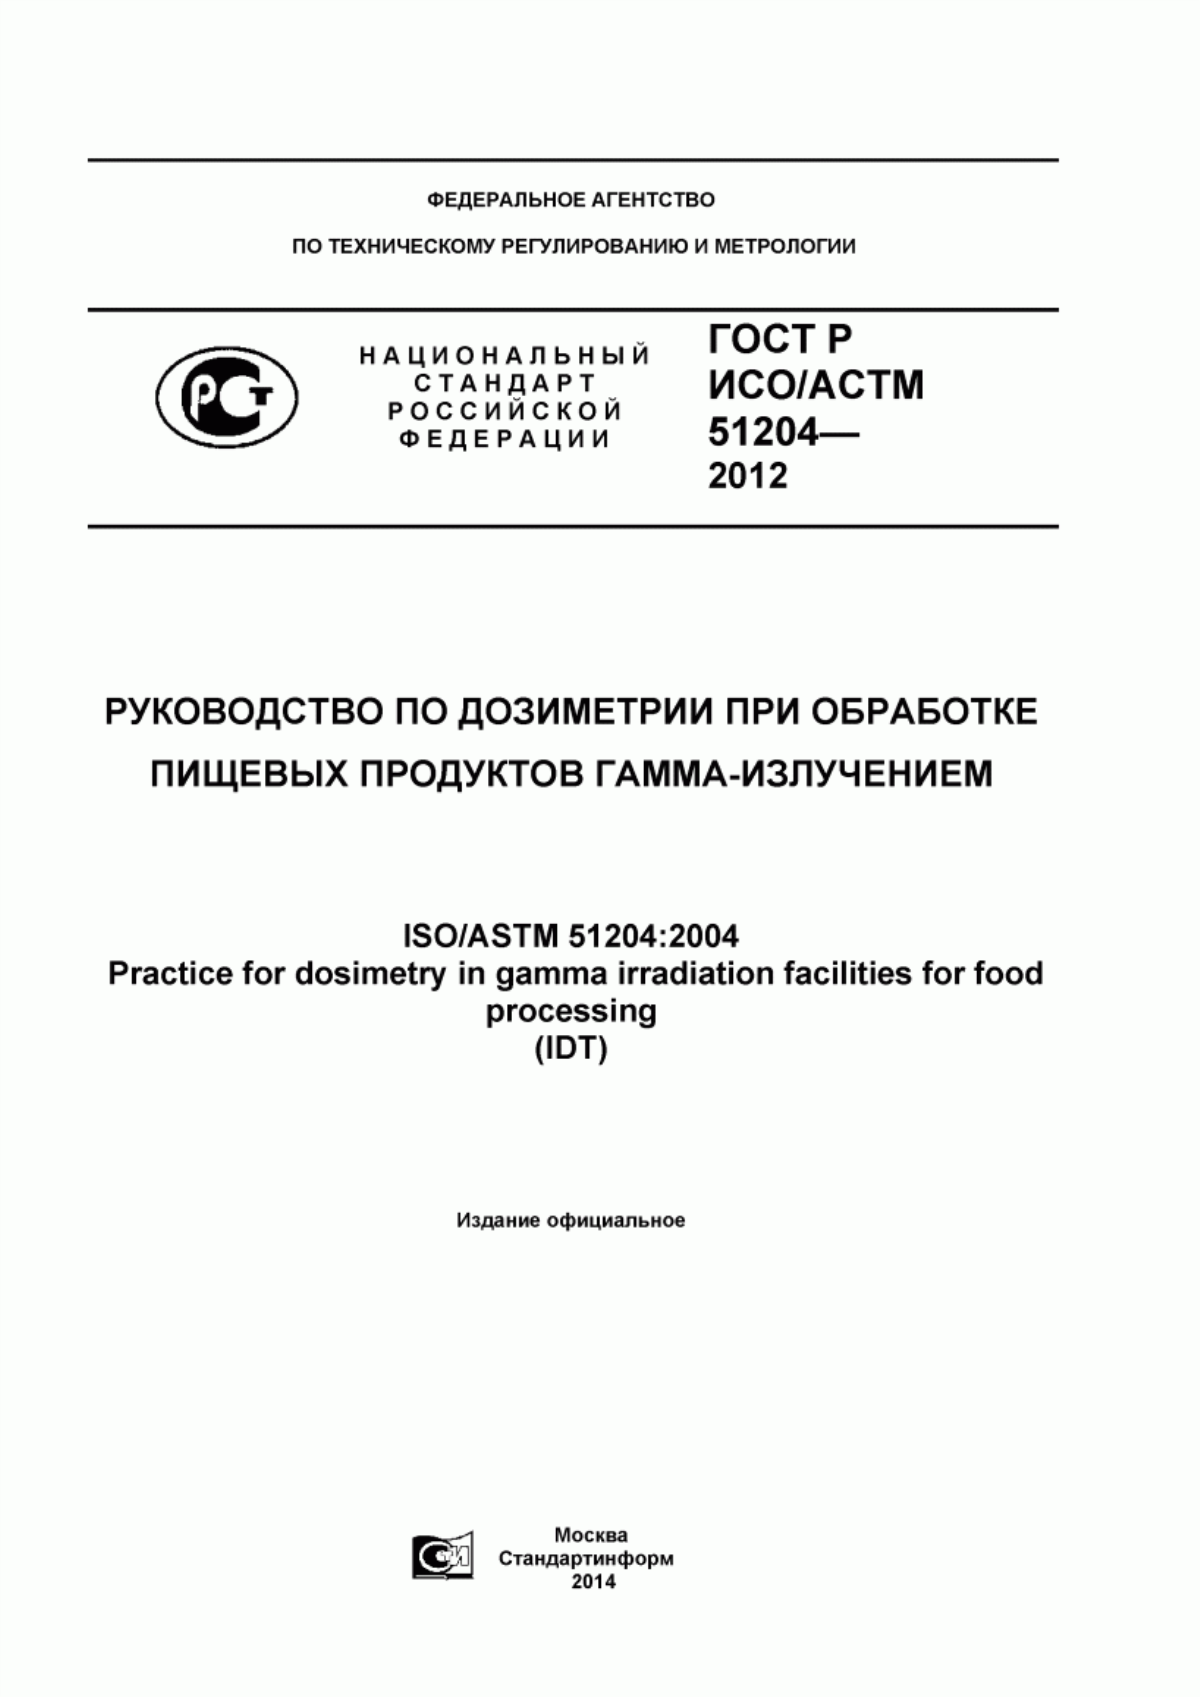 ГОСТ Р ИСО/АСТМ 51204-2012 Руководство по дозиметрии при обработке пищевых продуктов гамма-излучением